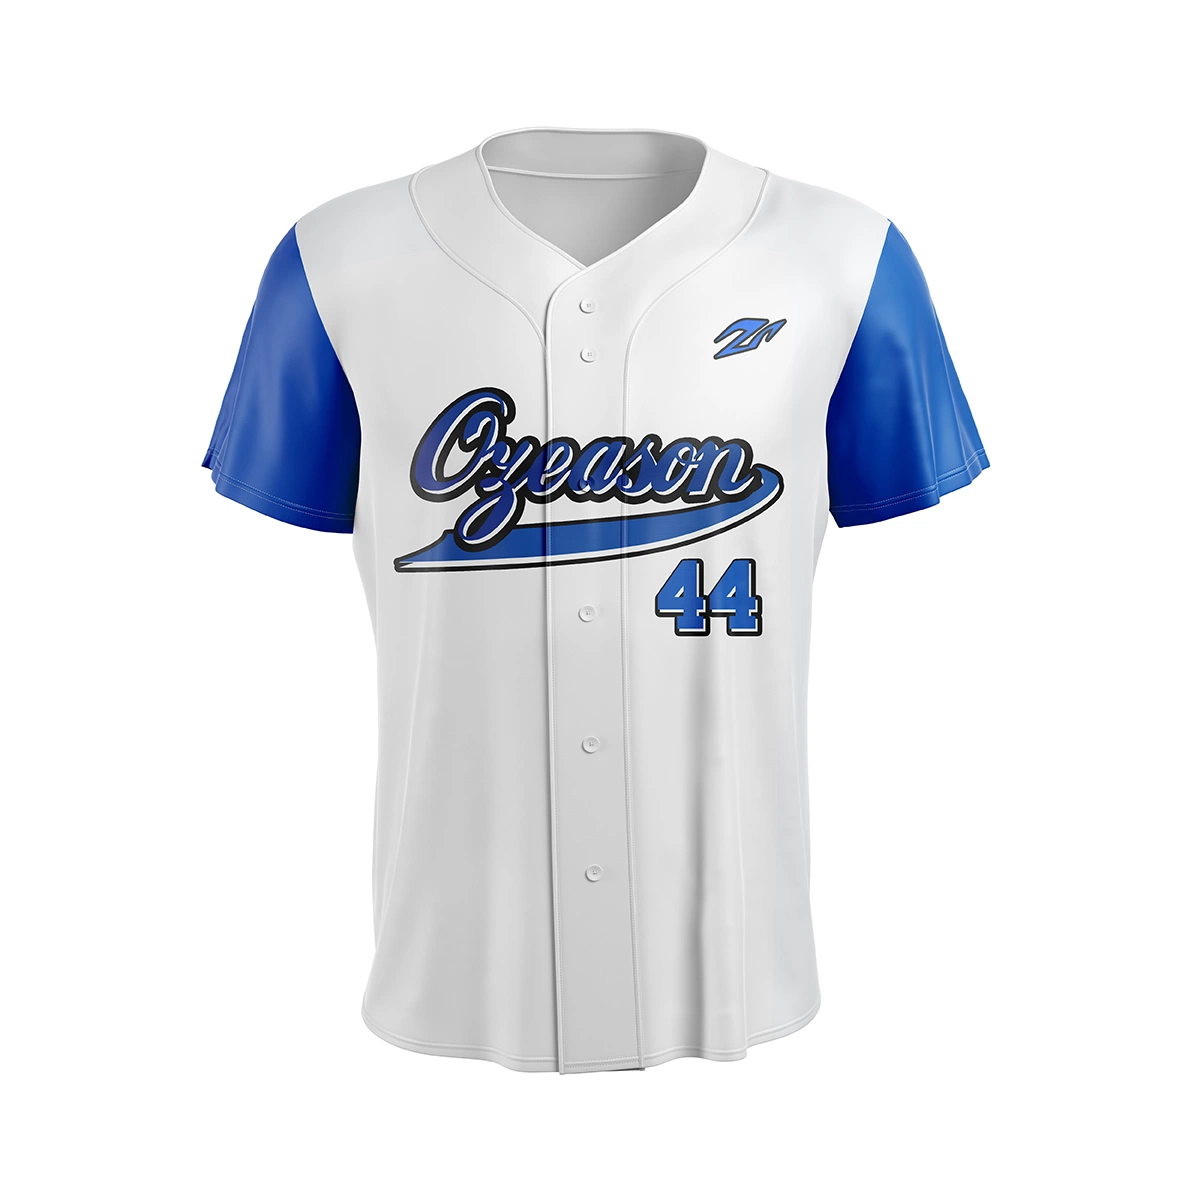 Benutzerdefinierte Großhandel/Lieferant Jugend Baseball Jersey Button Unbeschriftet Baseball Uniform Sets